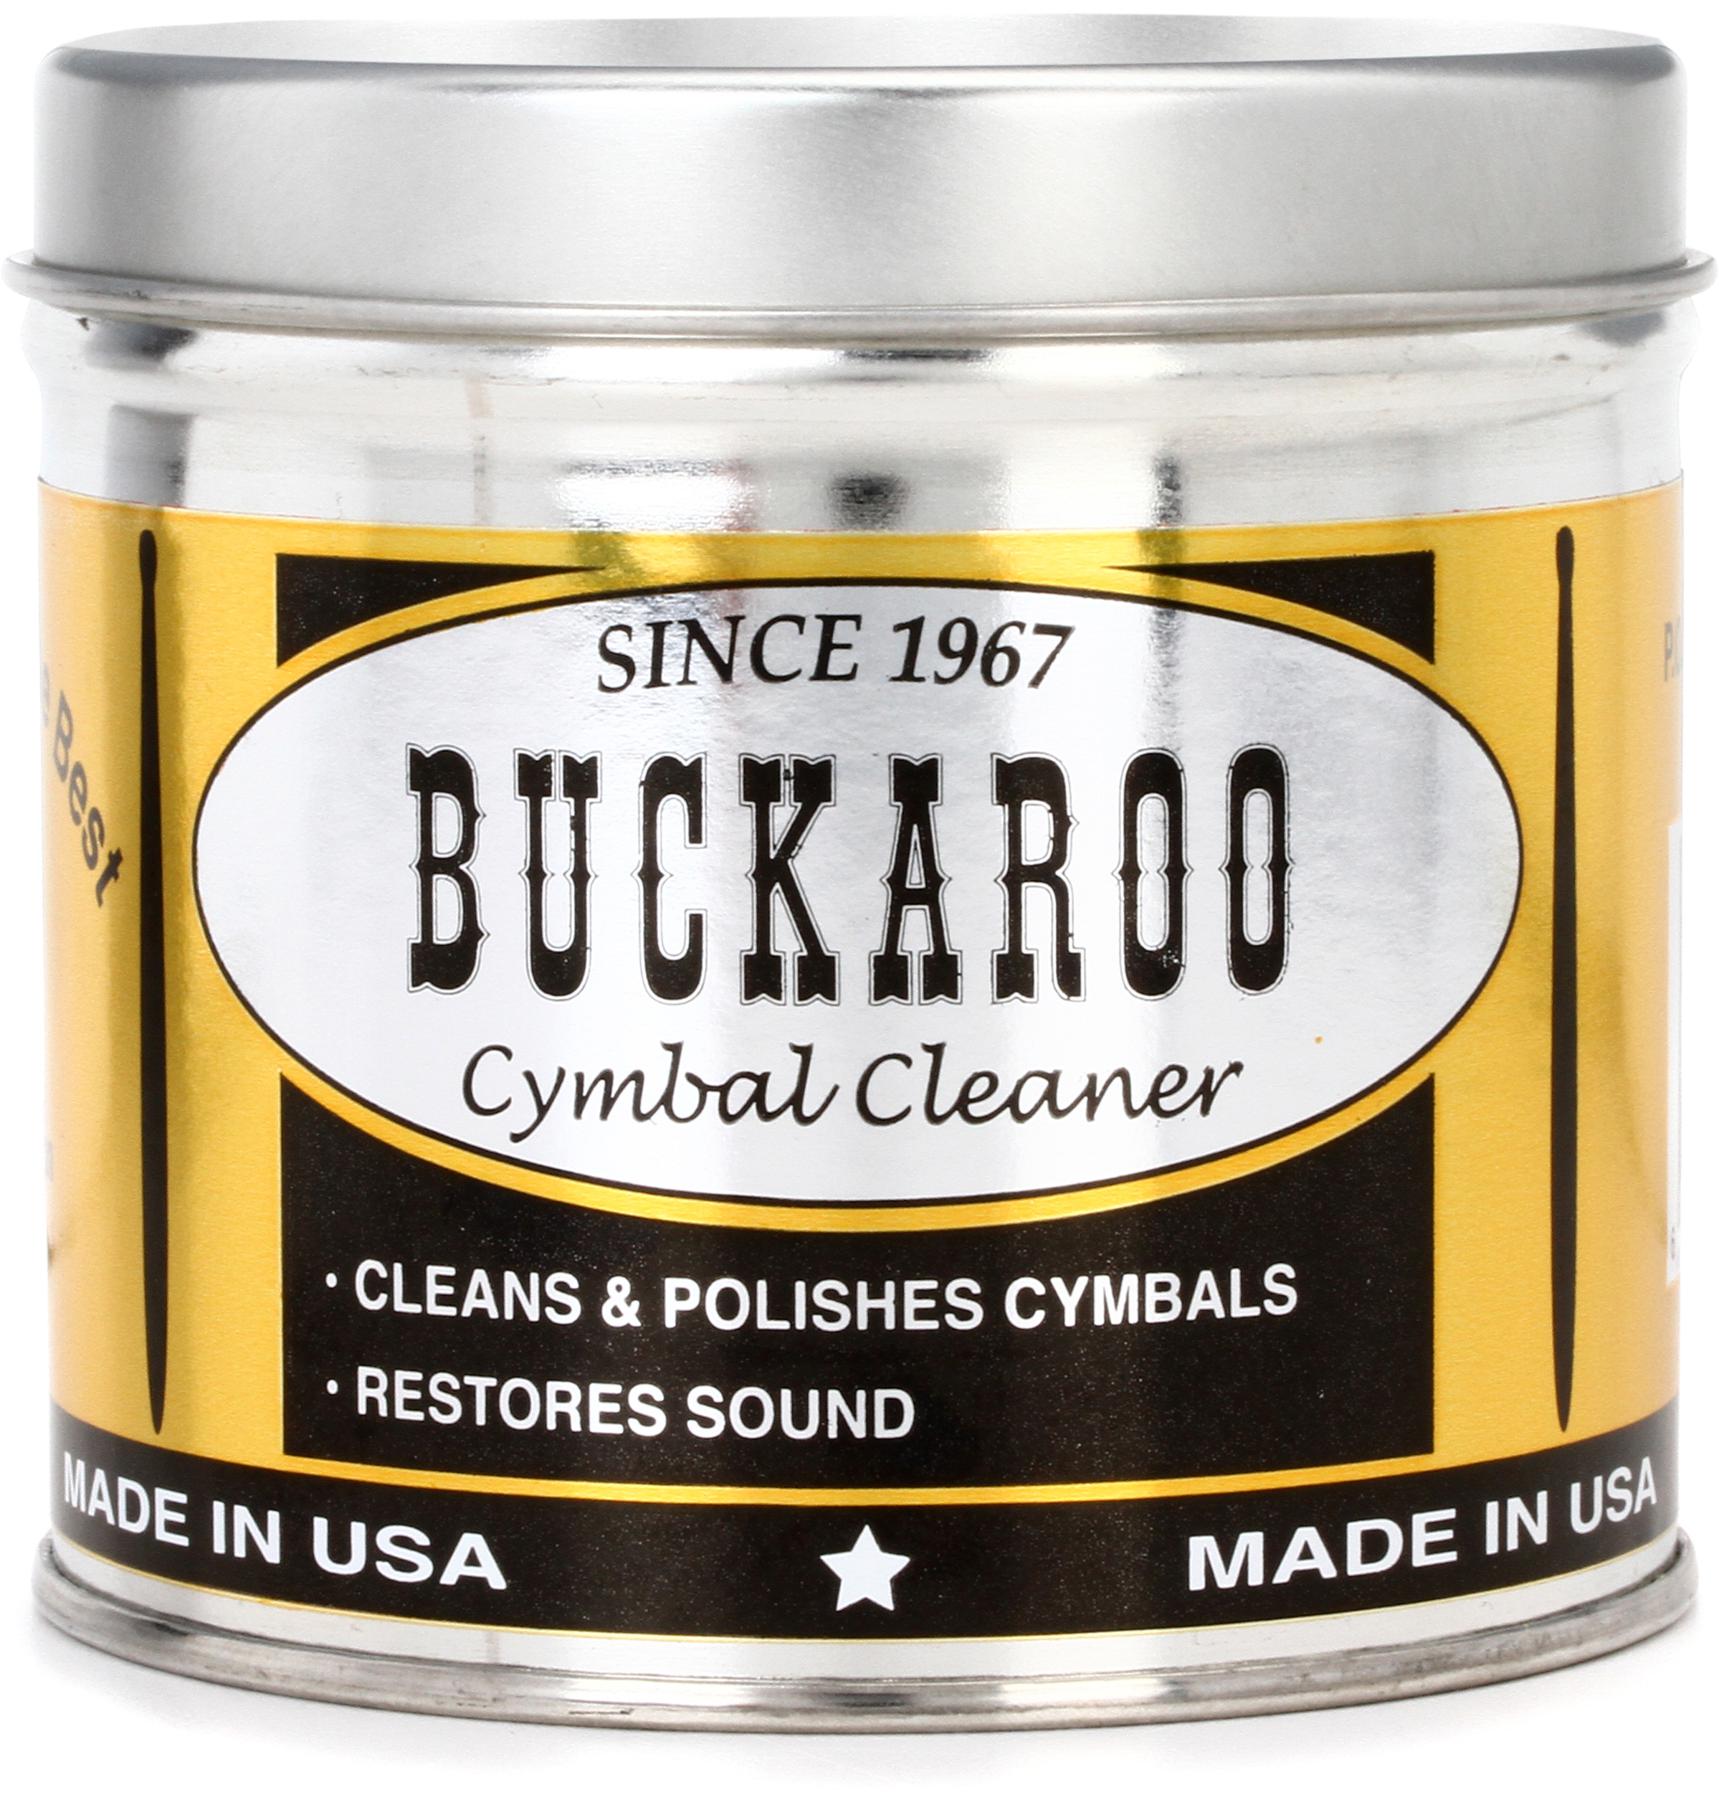 3. Buckaroo Cymbal Cleaner